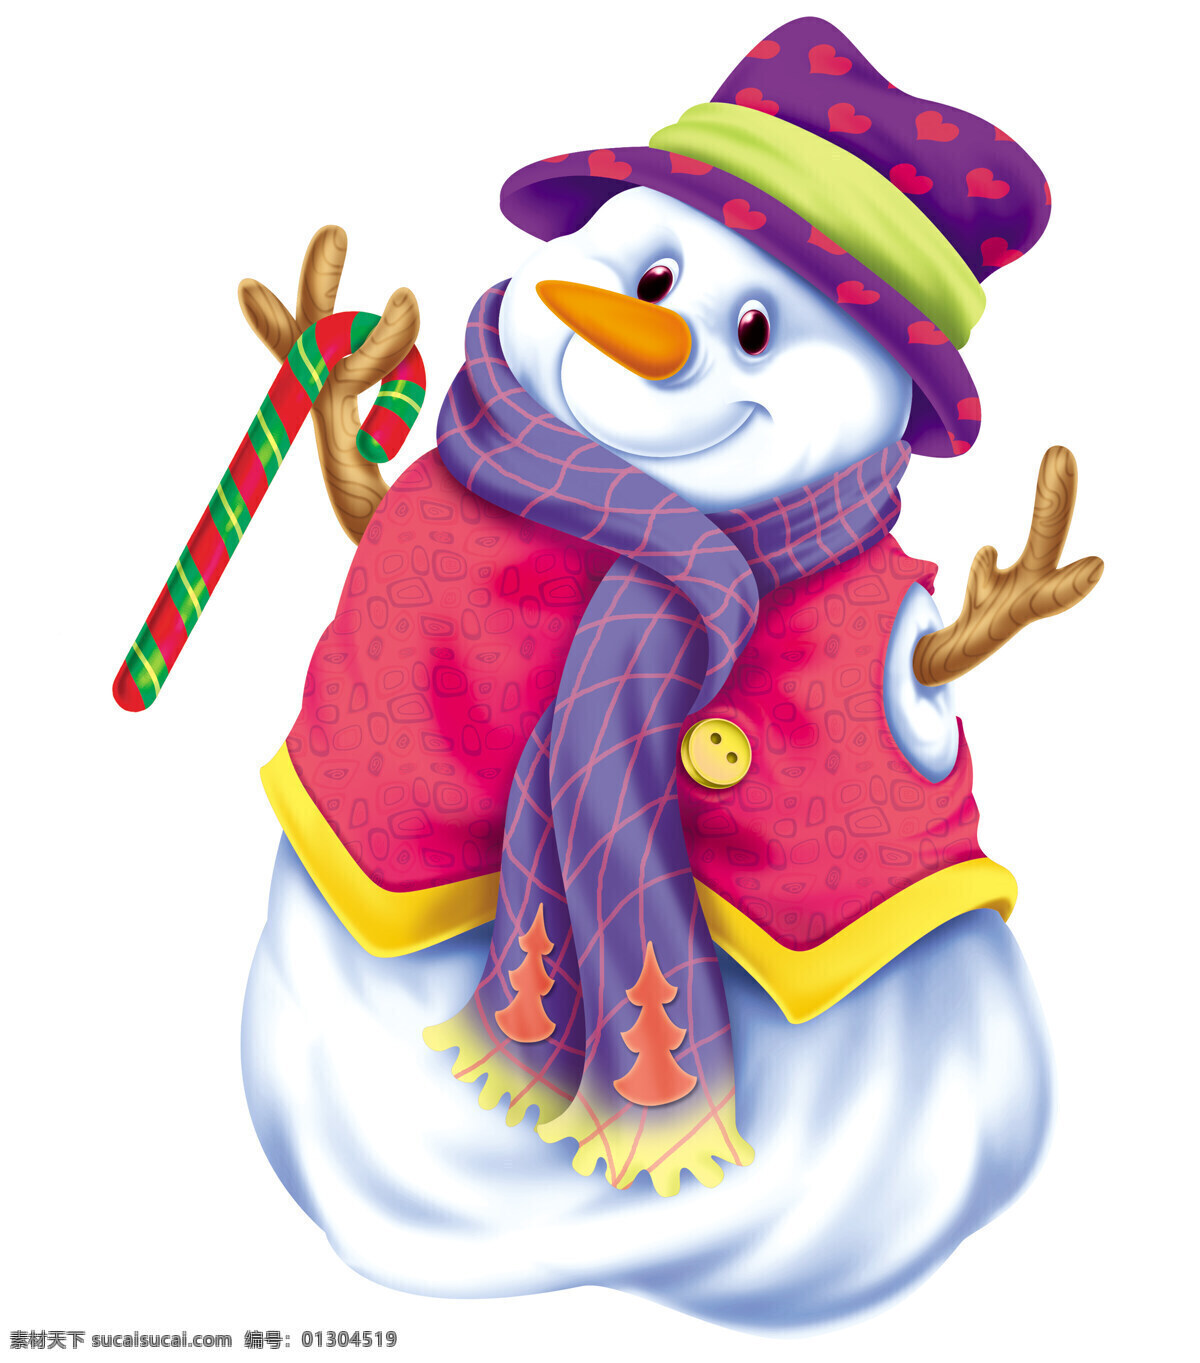 紫色 雪人 欢喜雪人 紫色雪帽 来了冬天 卡通 动漫 可爱